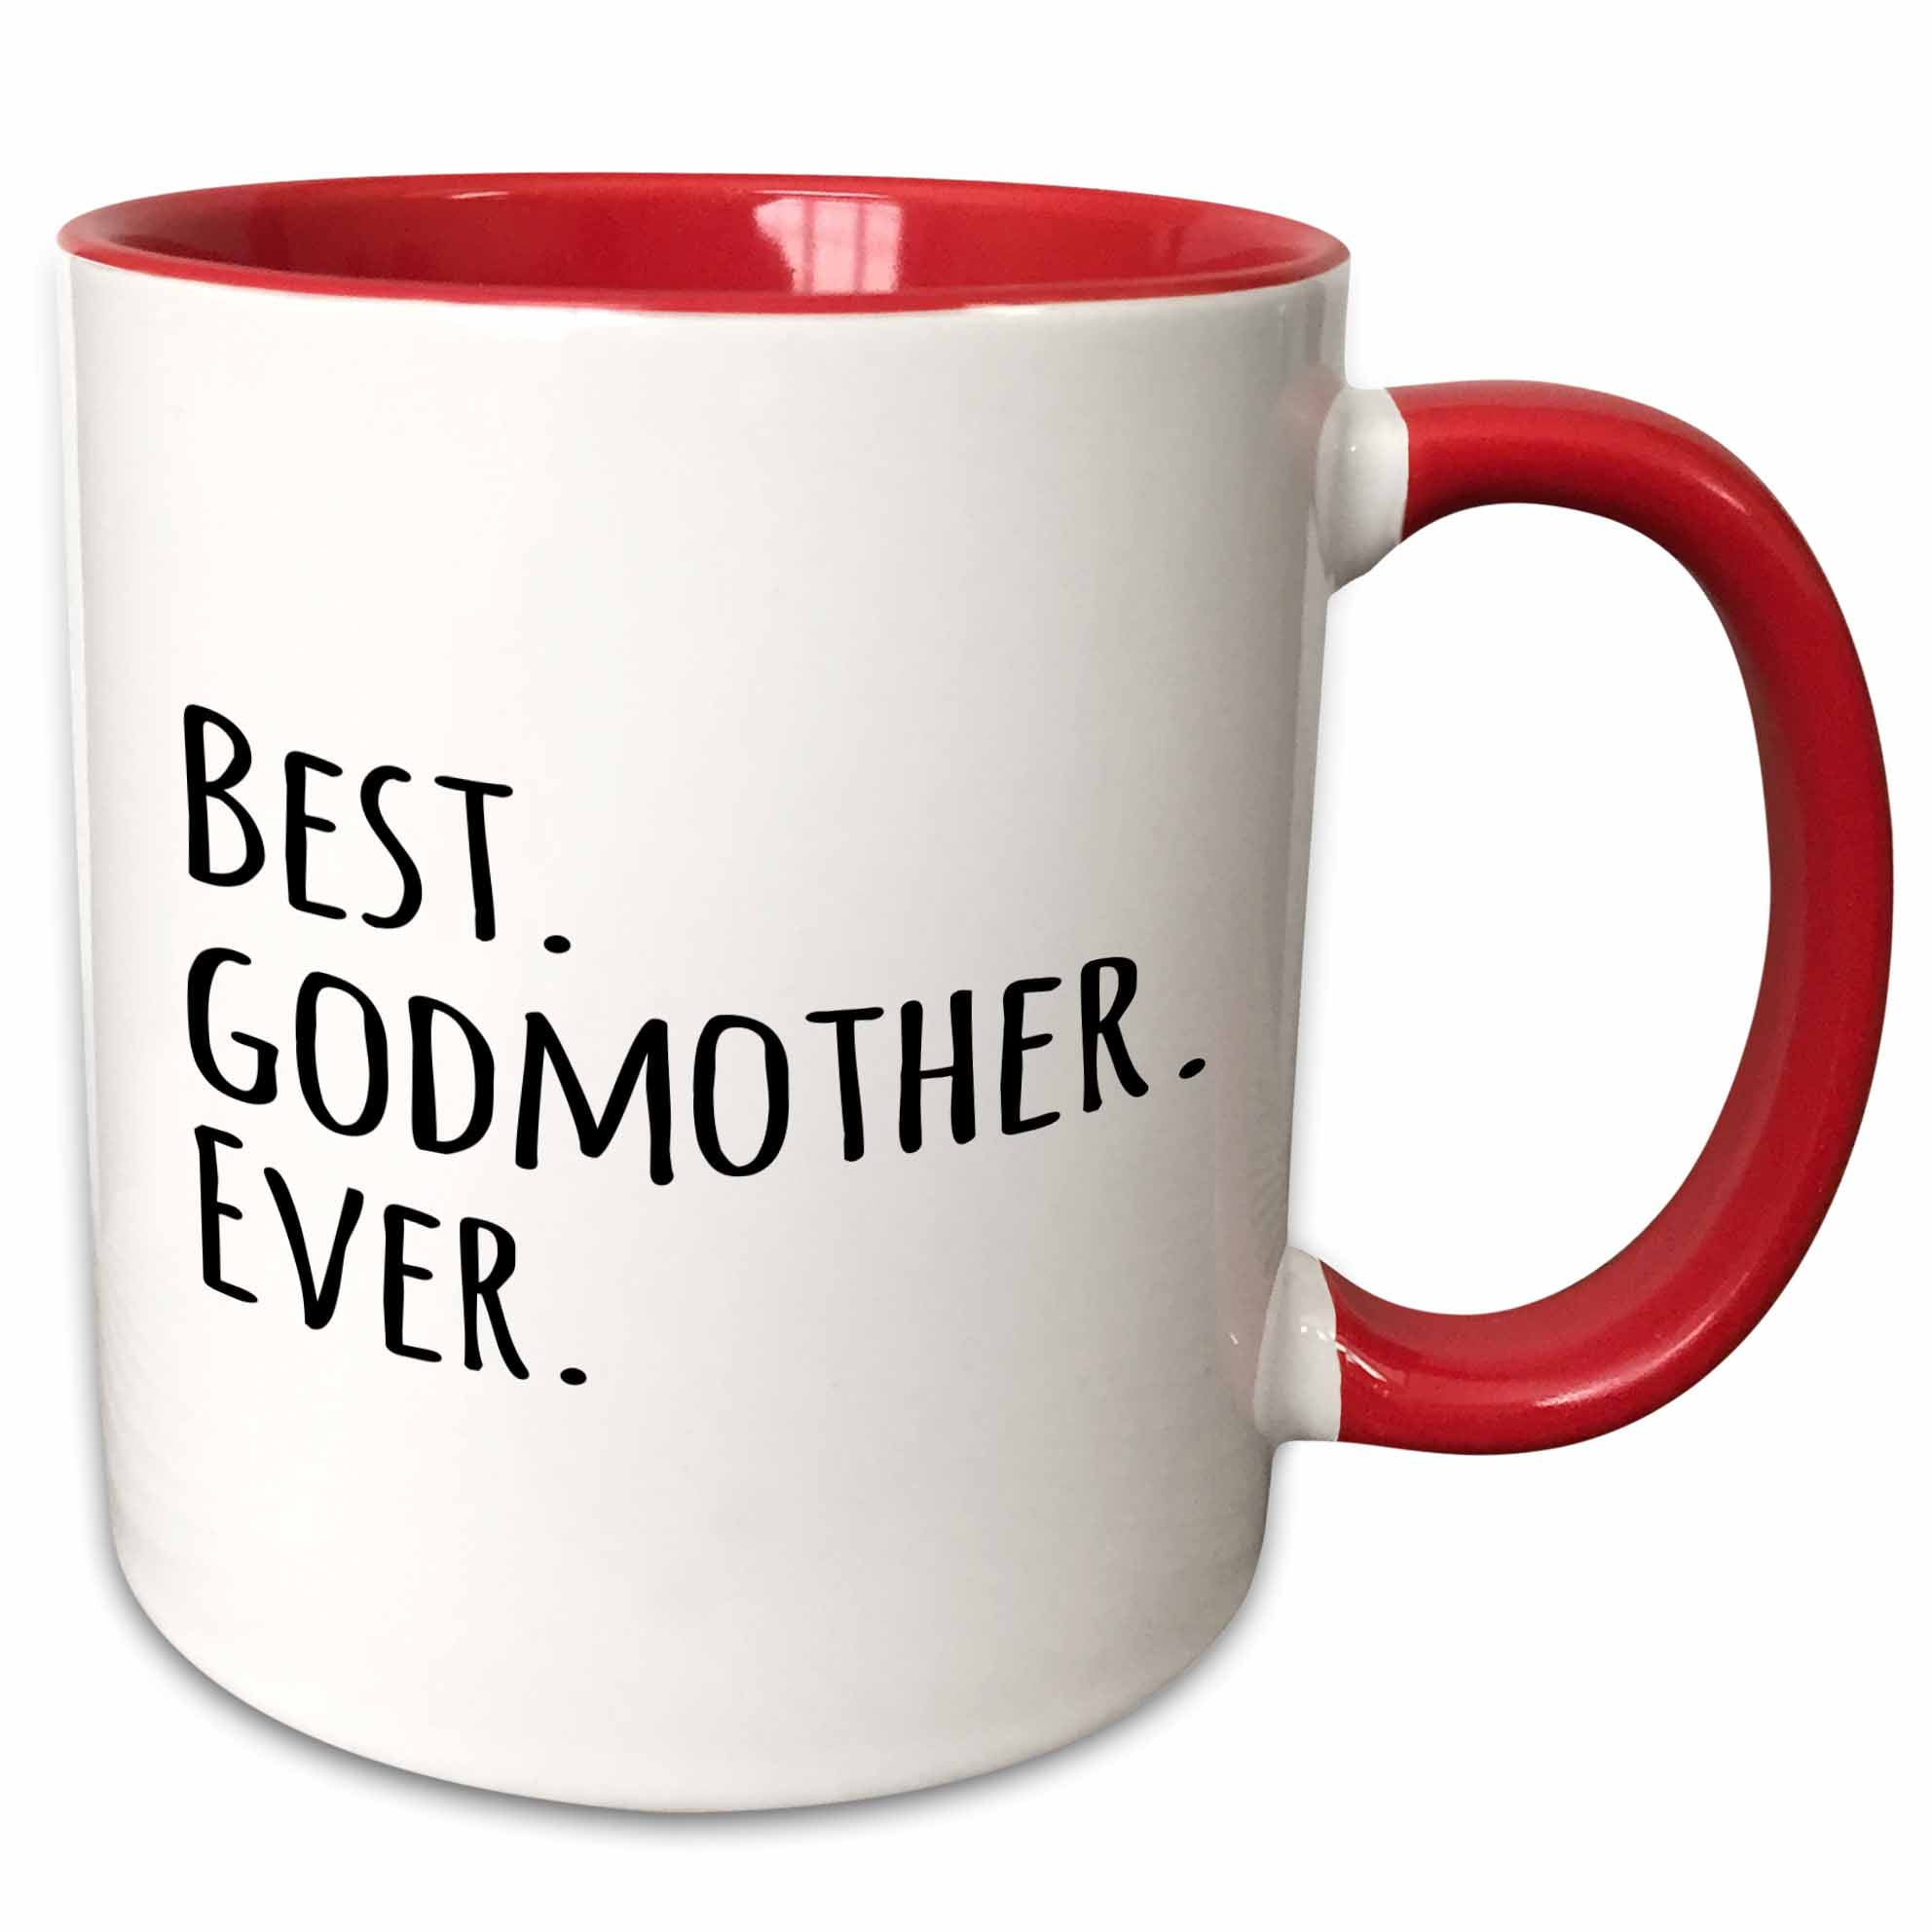 Godmother Coffee Mug Godmother gift Mug Details about   Godmother Mug God Mother Mug 